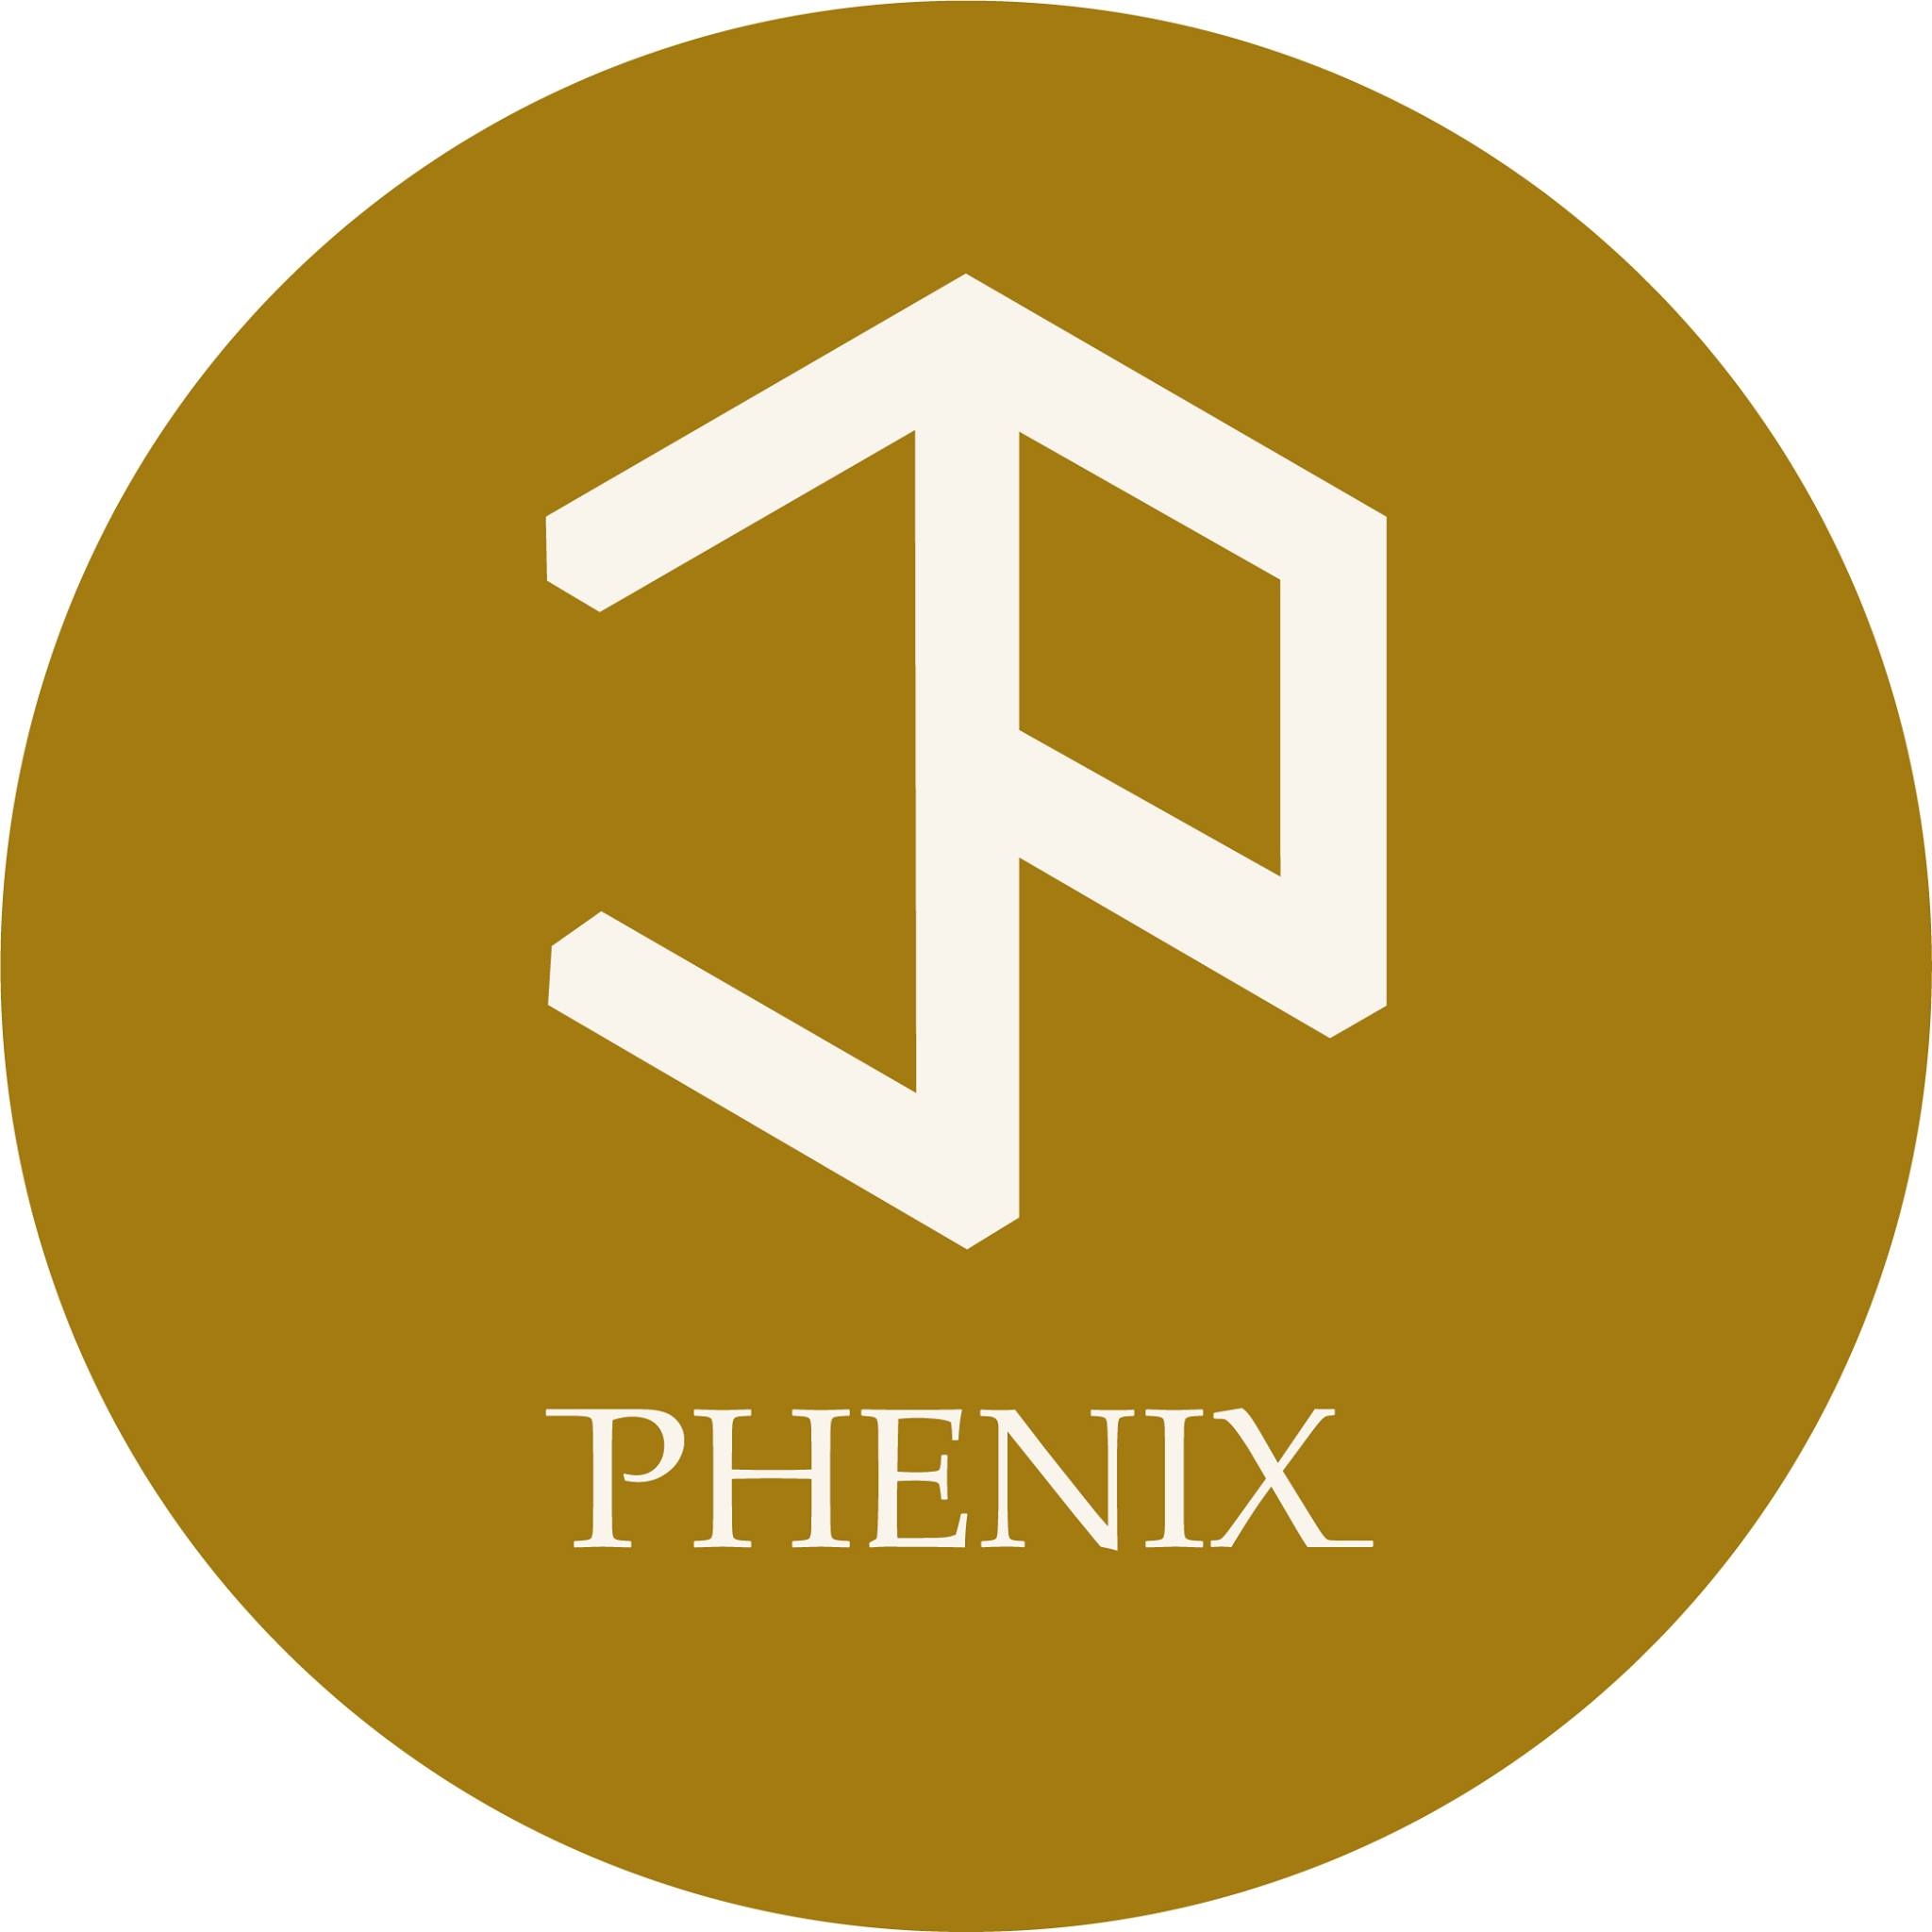 Phenix Jewellery